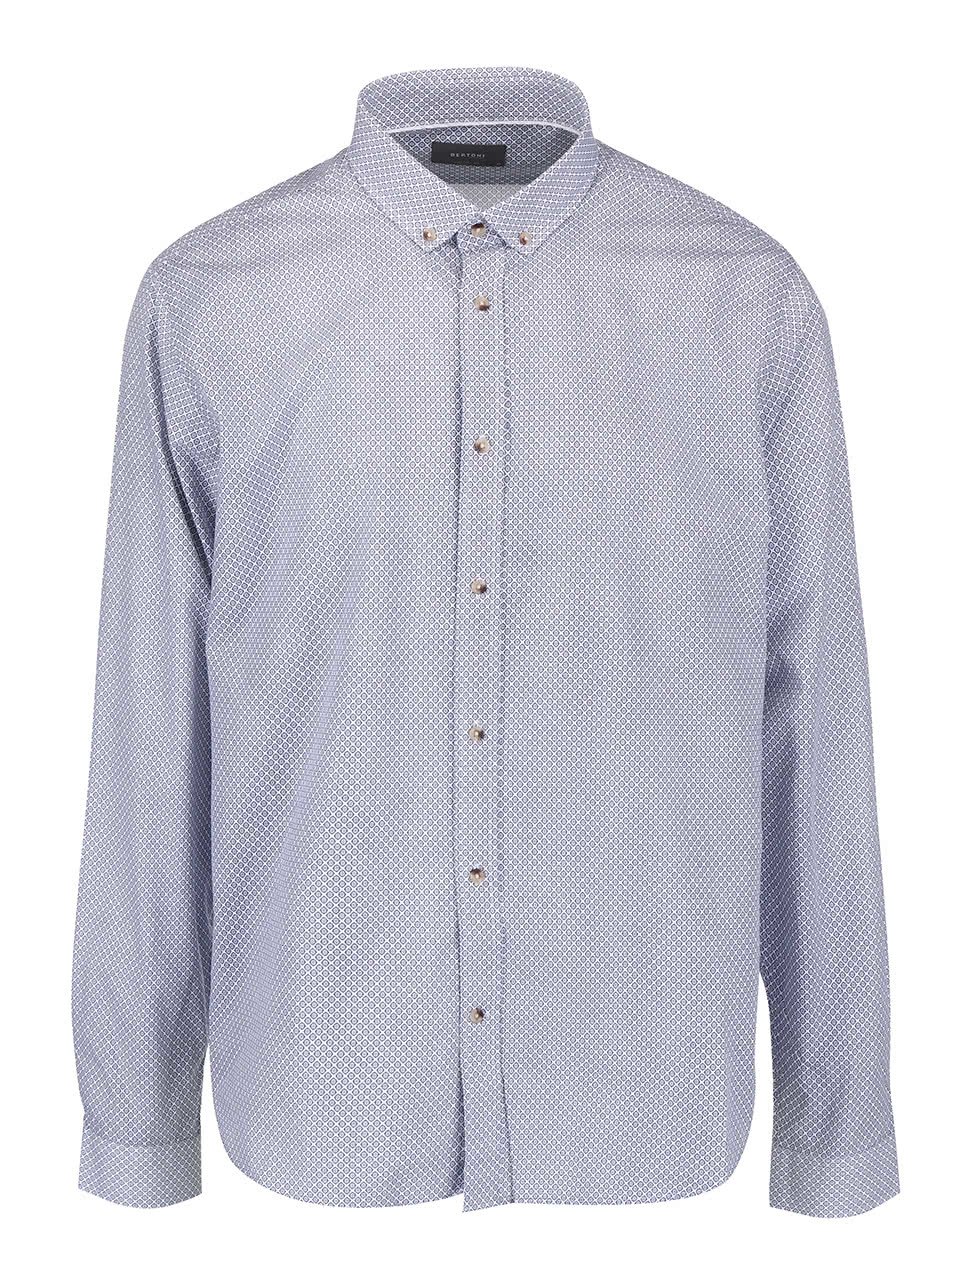 Světle modrá košile s drobným vzorem Bertoni Malte